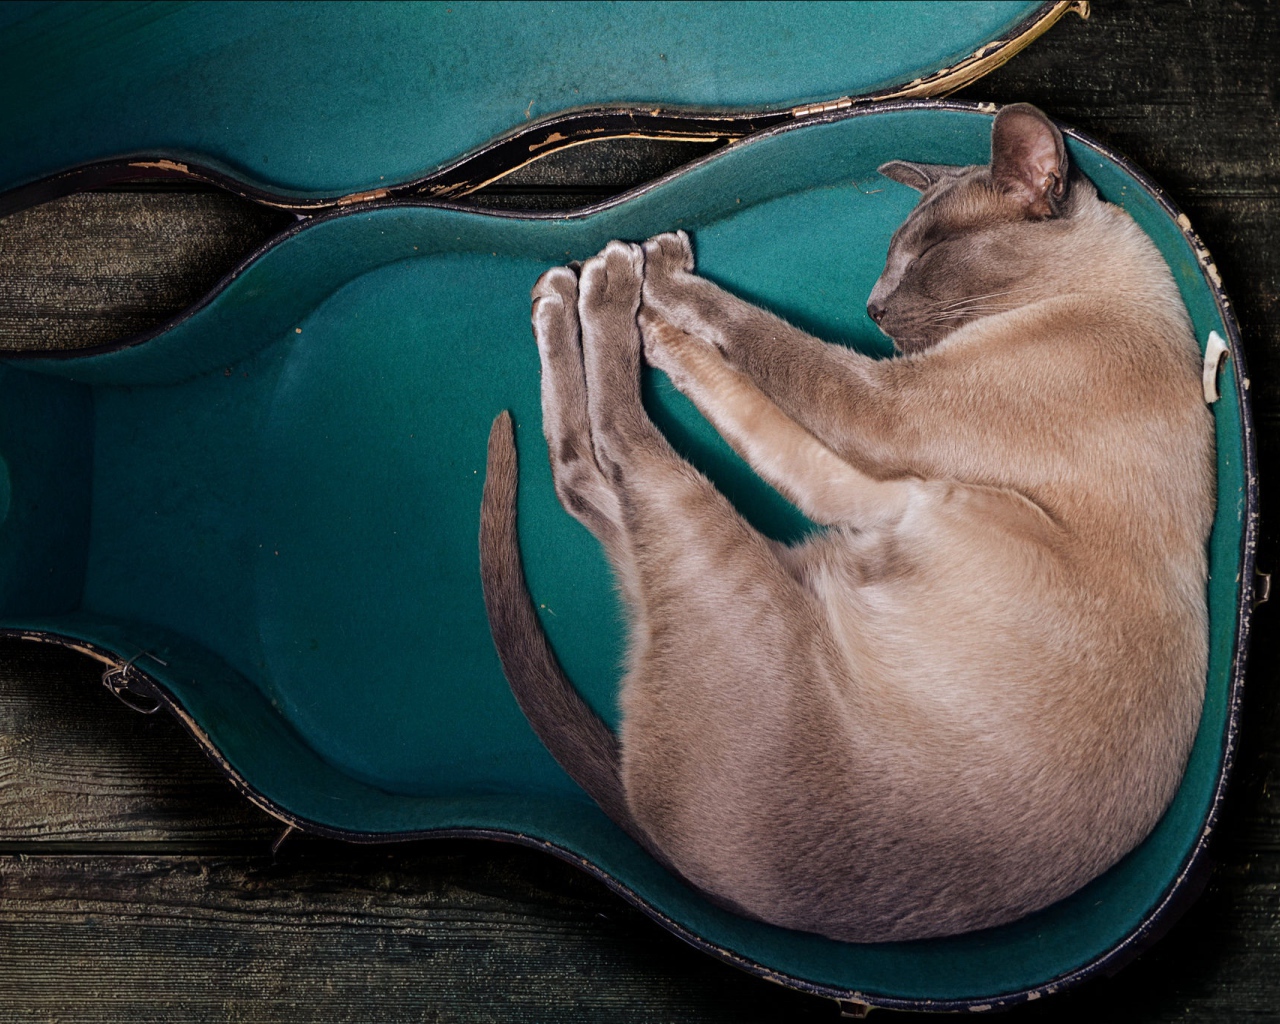 Породистый кот спит в футляре для гитары